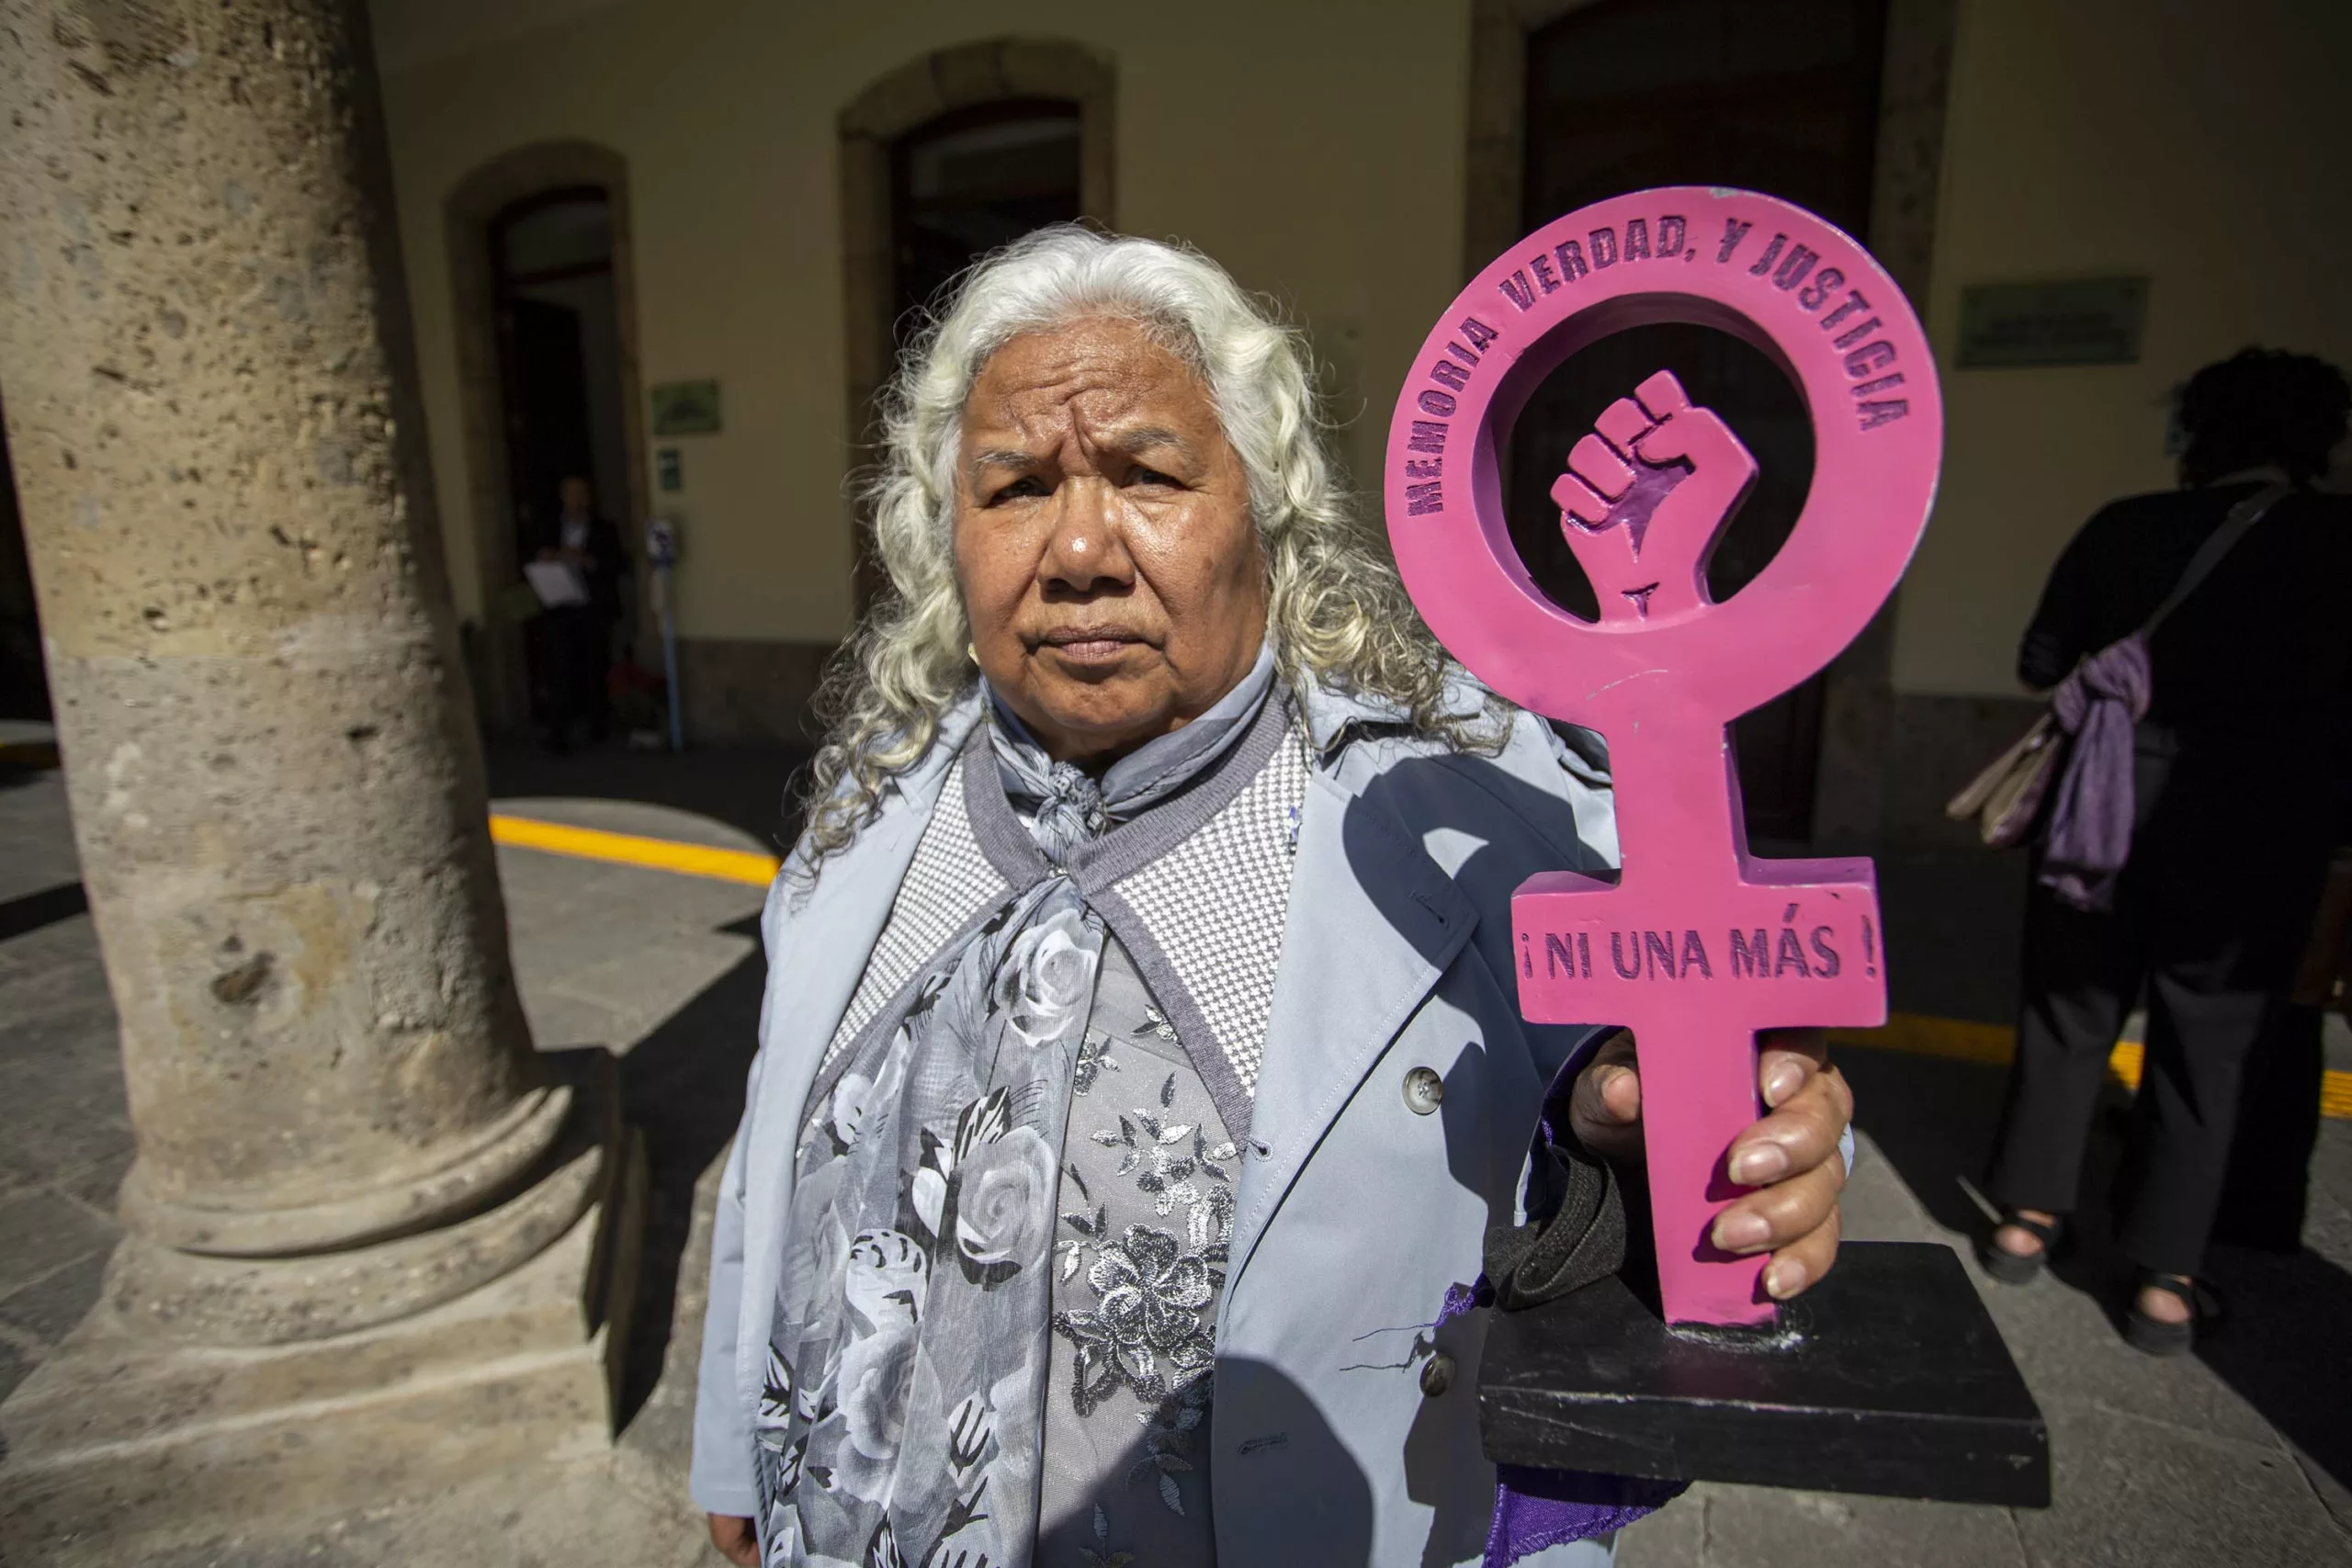 Irinea Buendía llama al Poder Judicial y Congreso de Jalisco para adoptar la Sentencia Mariana Lima 